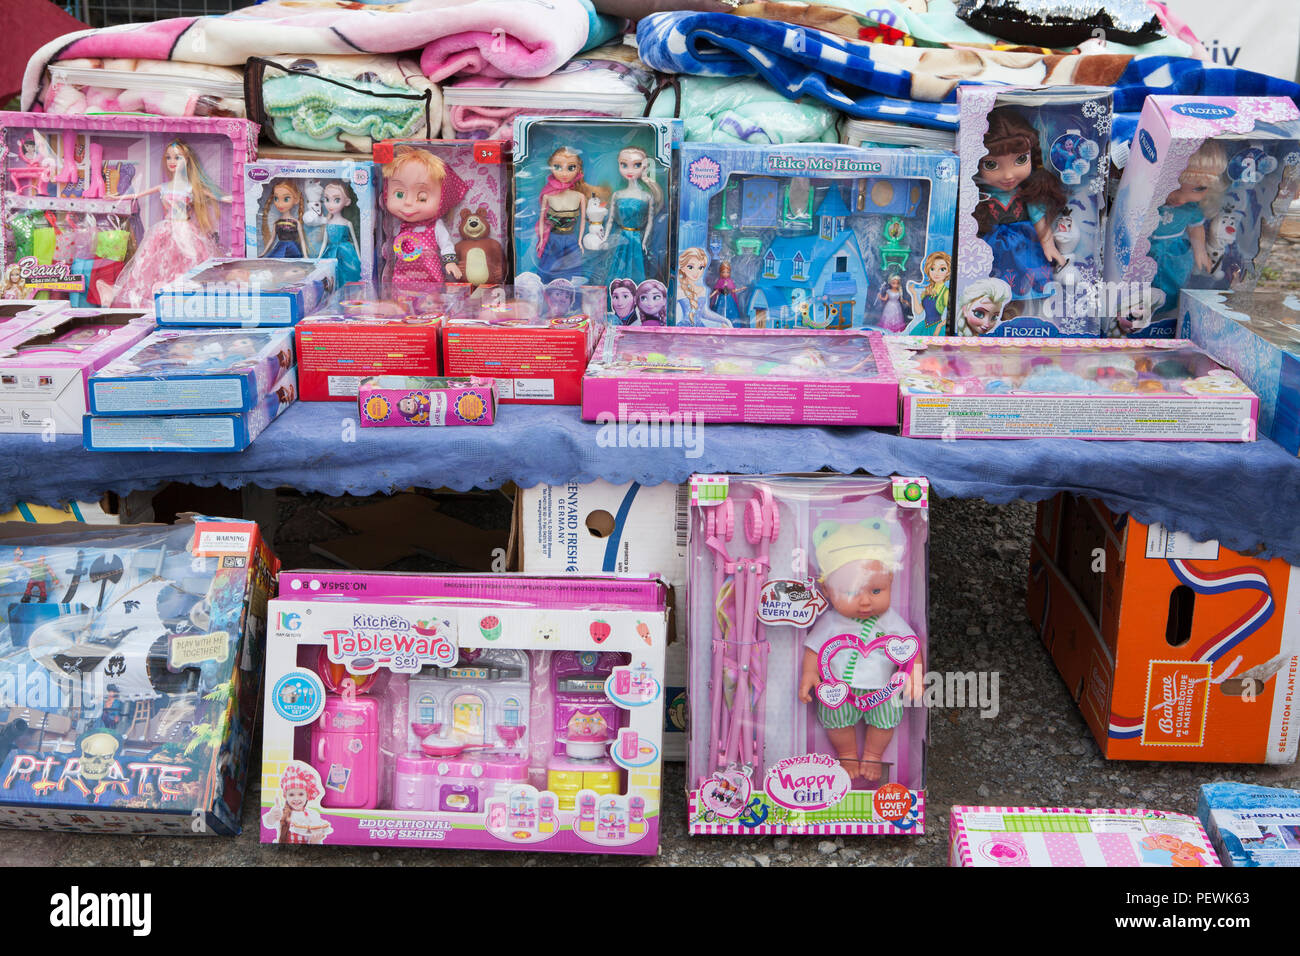 Les jouets en plastique à un stand de marché, l'Allemagne, de l'Europe Banque D'Images